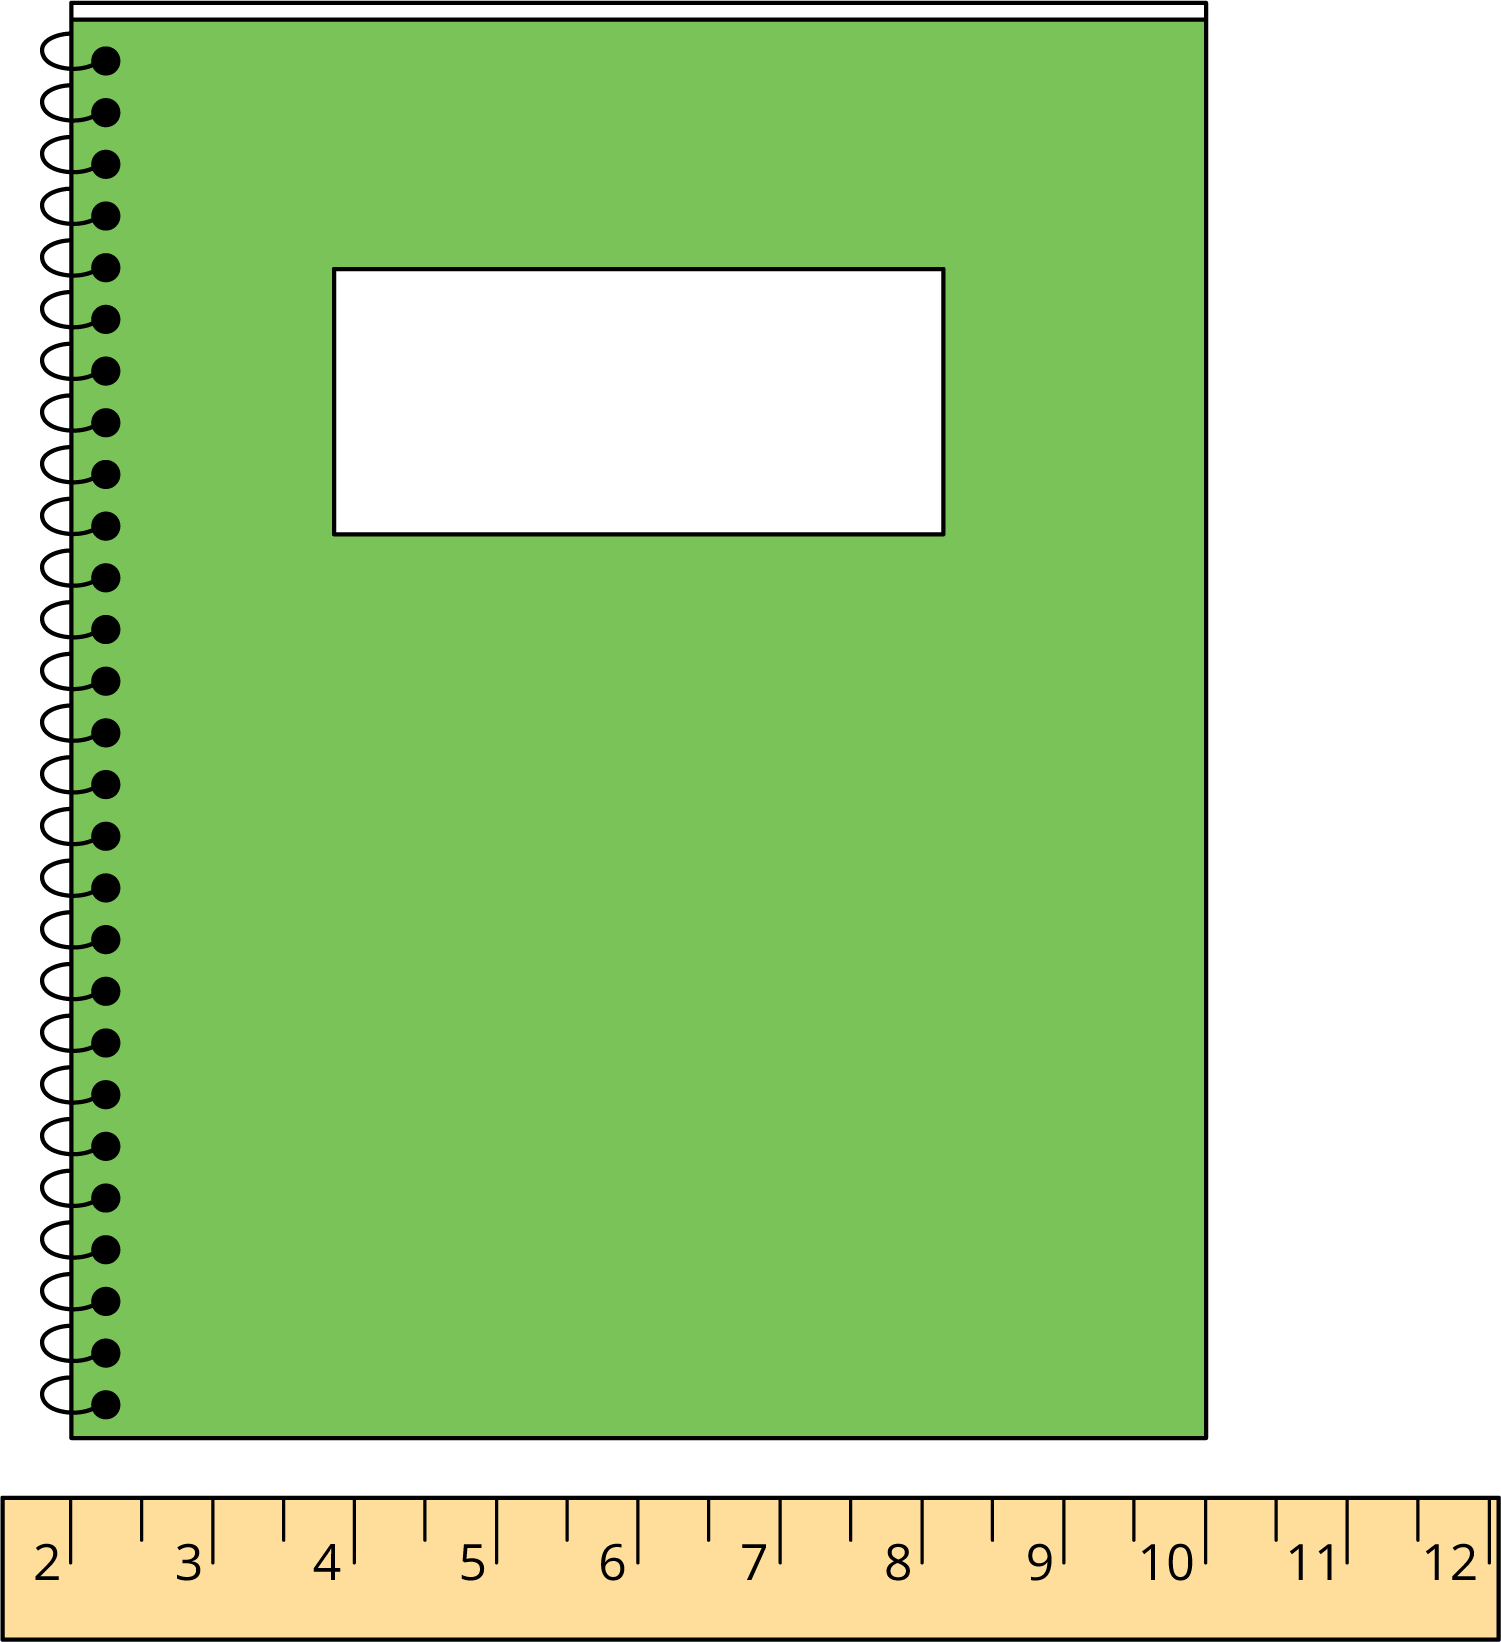 Una regla marcada con números del 2 al 12. Con la regla se mide el lado corto de un cuaderno. El lado corto del cuaderno comienza en 2 y termina en 10.